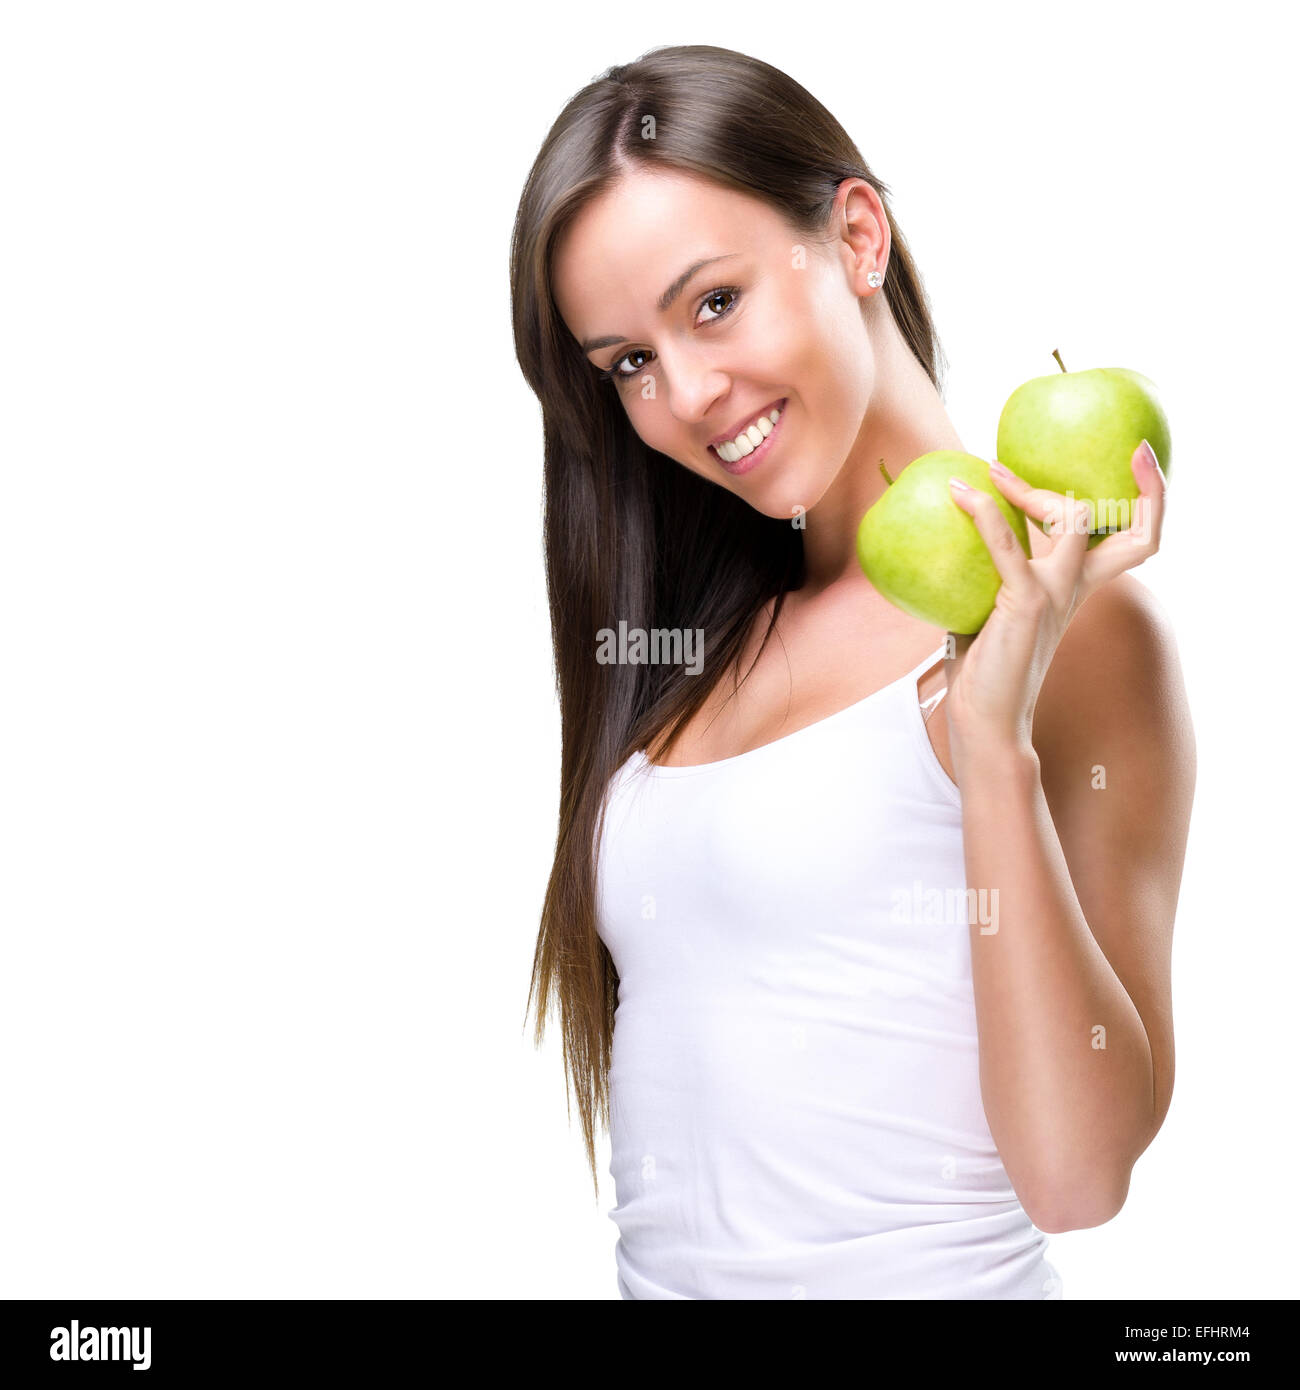 Gesunde Lebensweise - schöne, natürliche Frau hält zwei Apfel Stockfoto